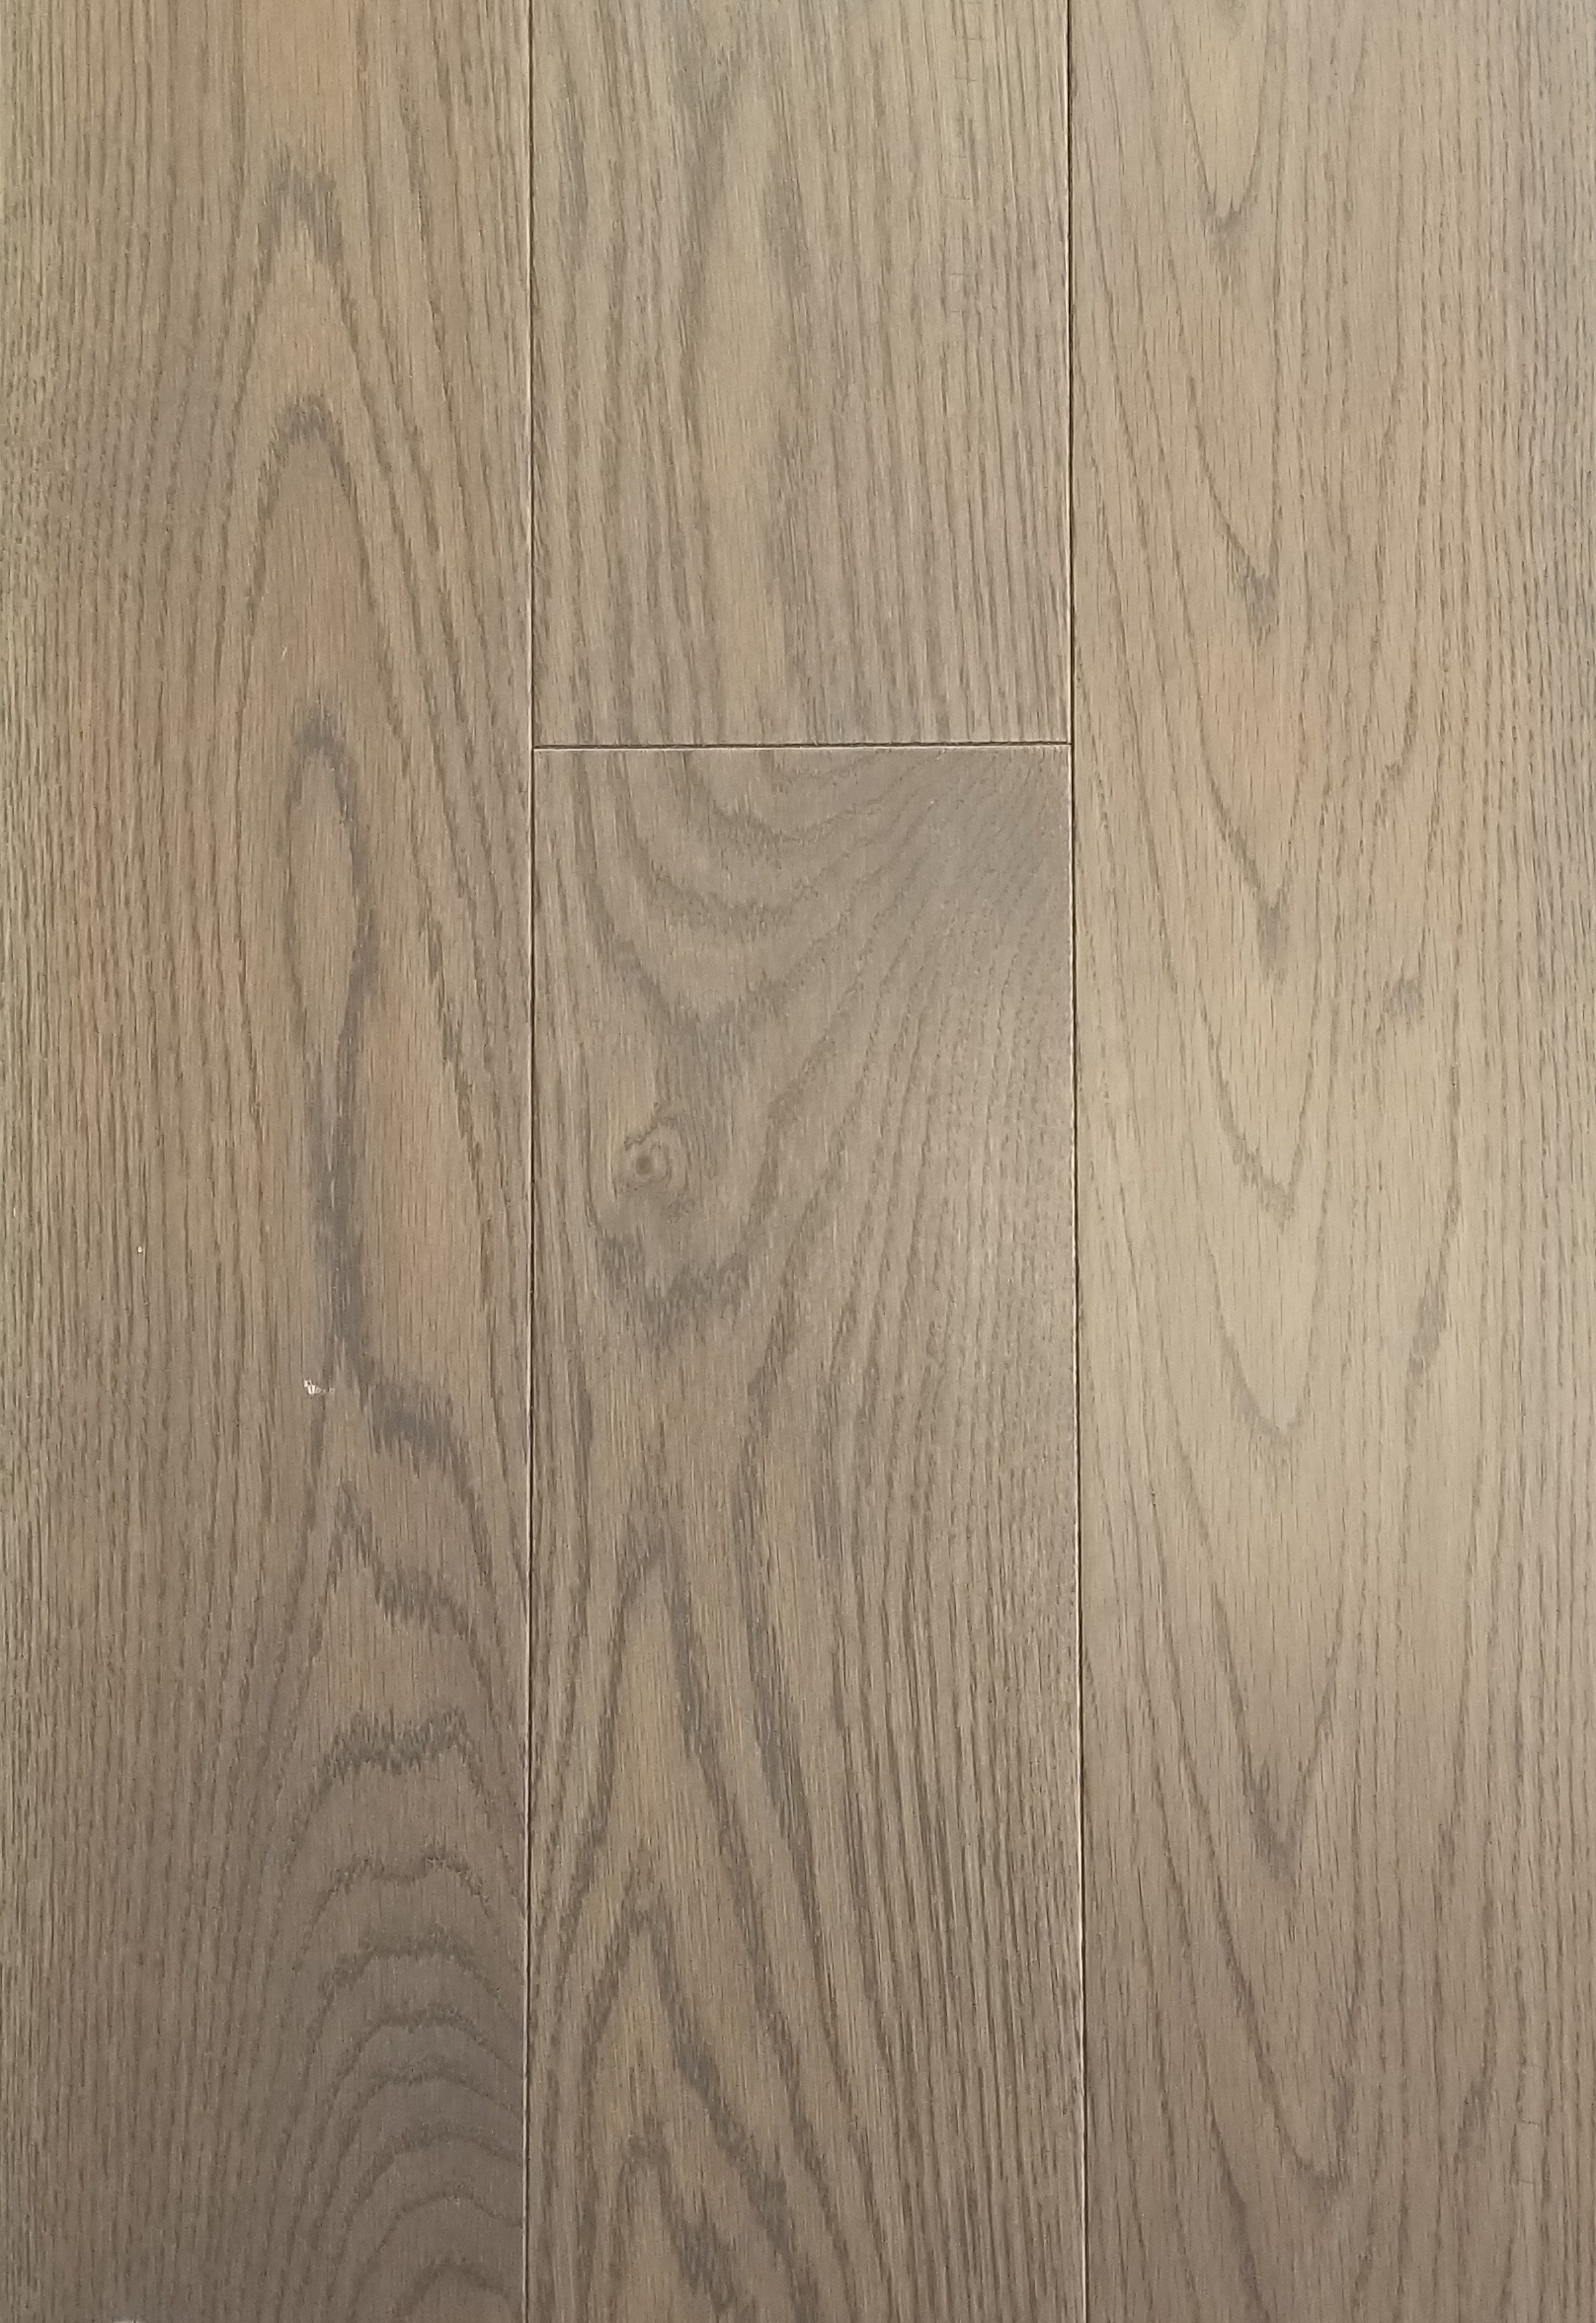 Hardwood Flooring Engineered, Driftwood Colored Hardwood Flooring